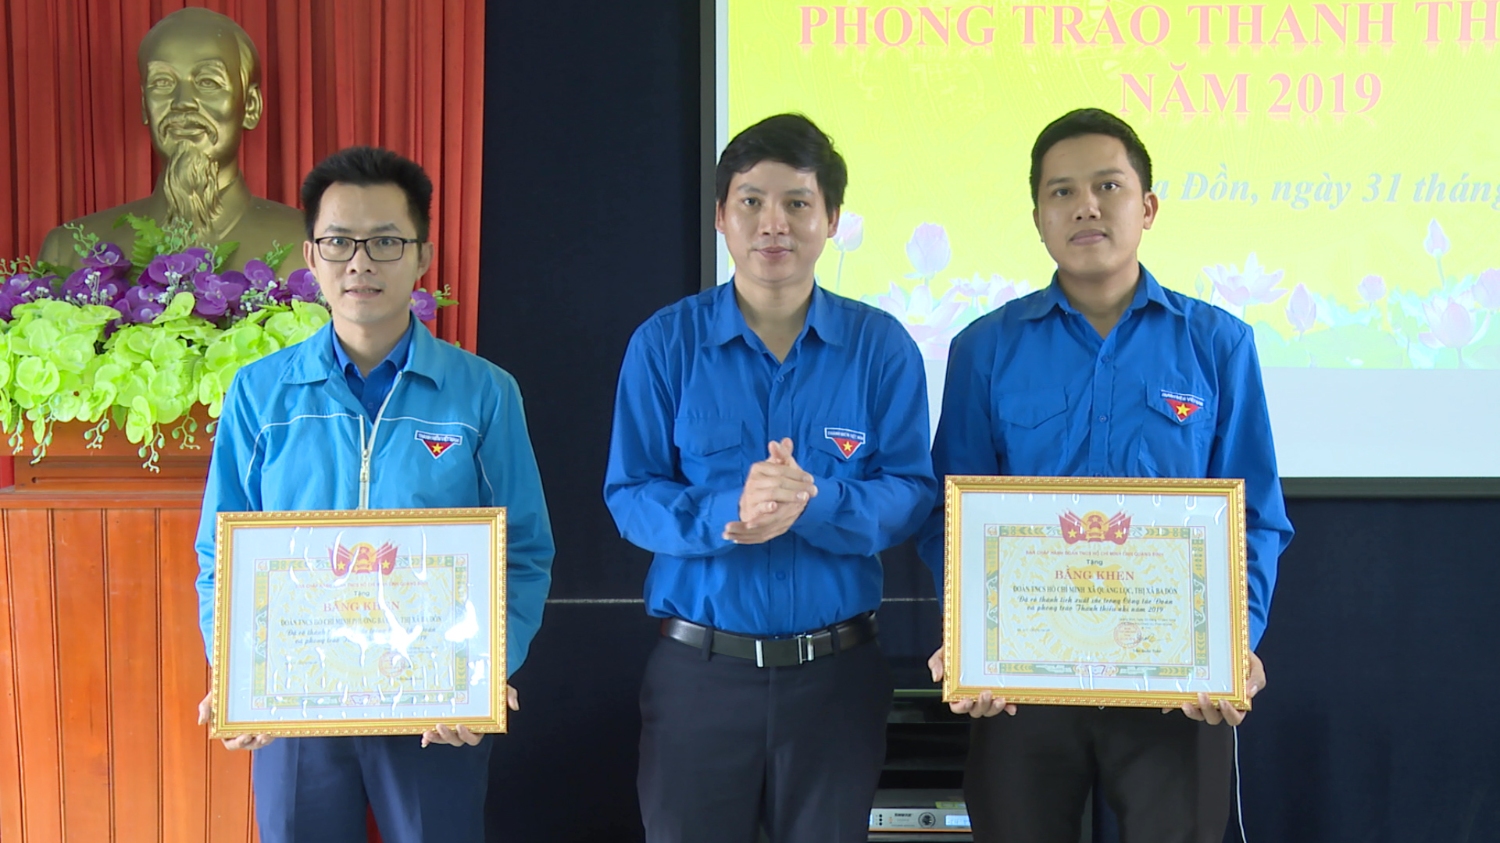 Tỉnh Đoàn Quảng Bình bằng khen 2 cá nhân có thành tích xuất sắc trong công tác Đoàn và phong trào thanh thiếu nhi năm 2019